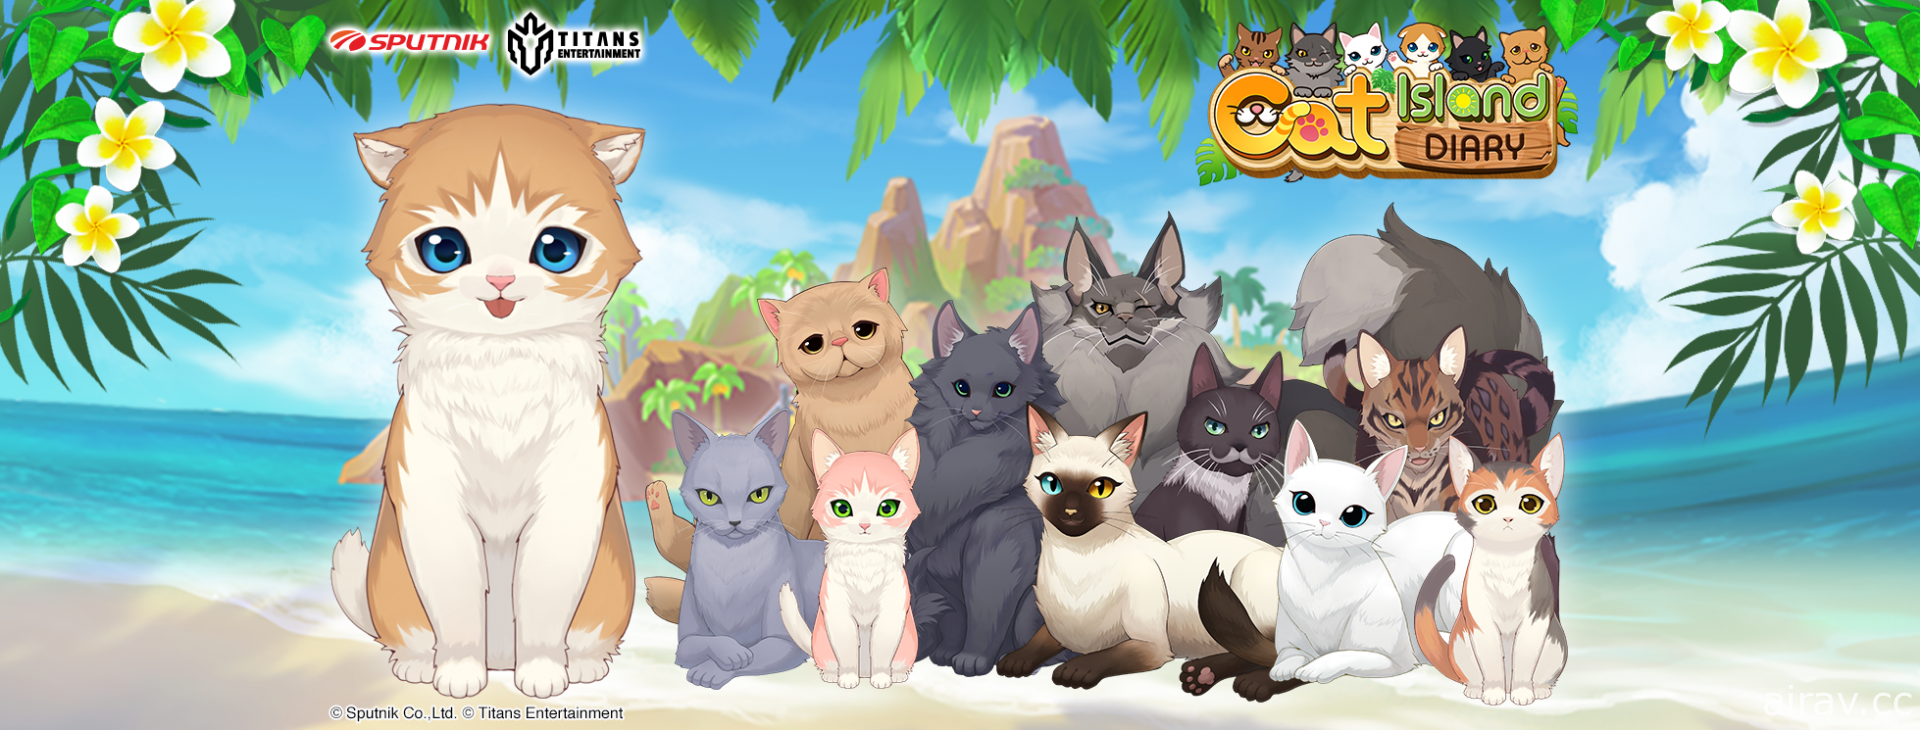 拼图消除游戏《猫岛日记》国际版双平台开放下载 与猫咪们探索无人岛